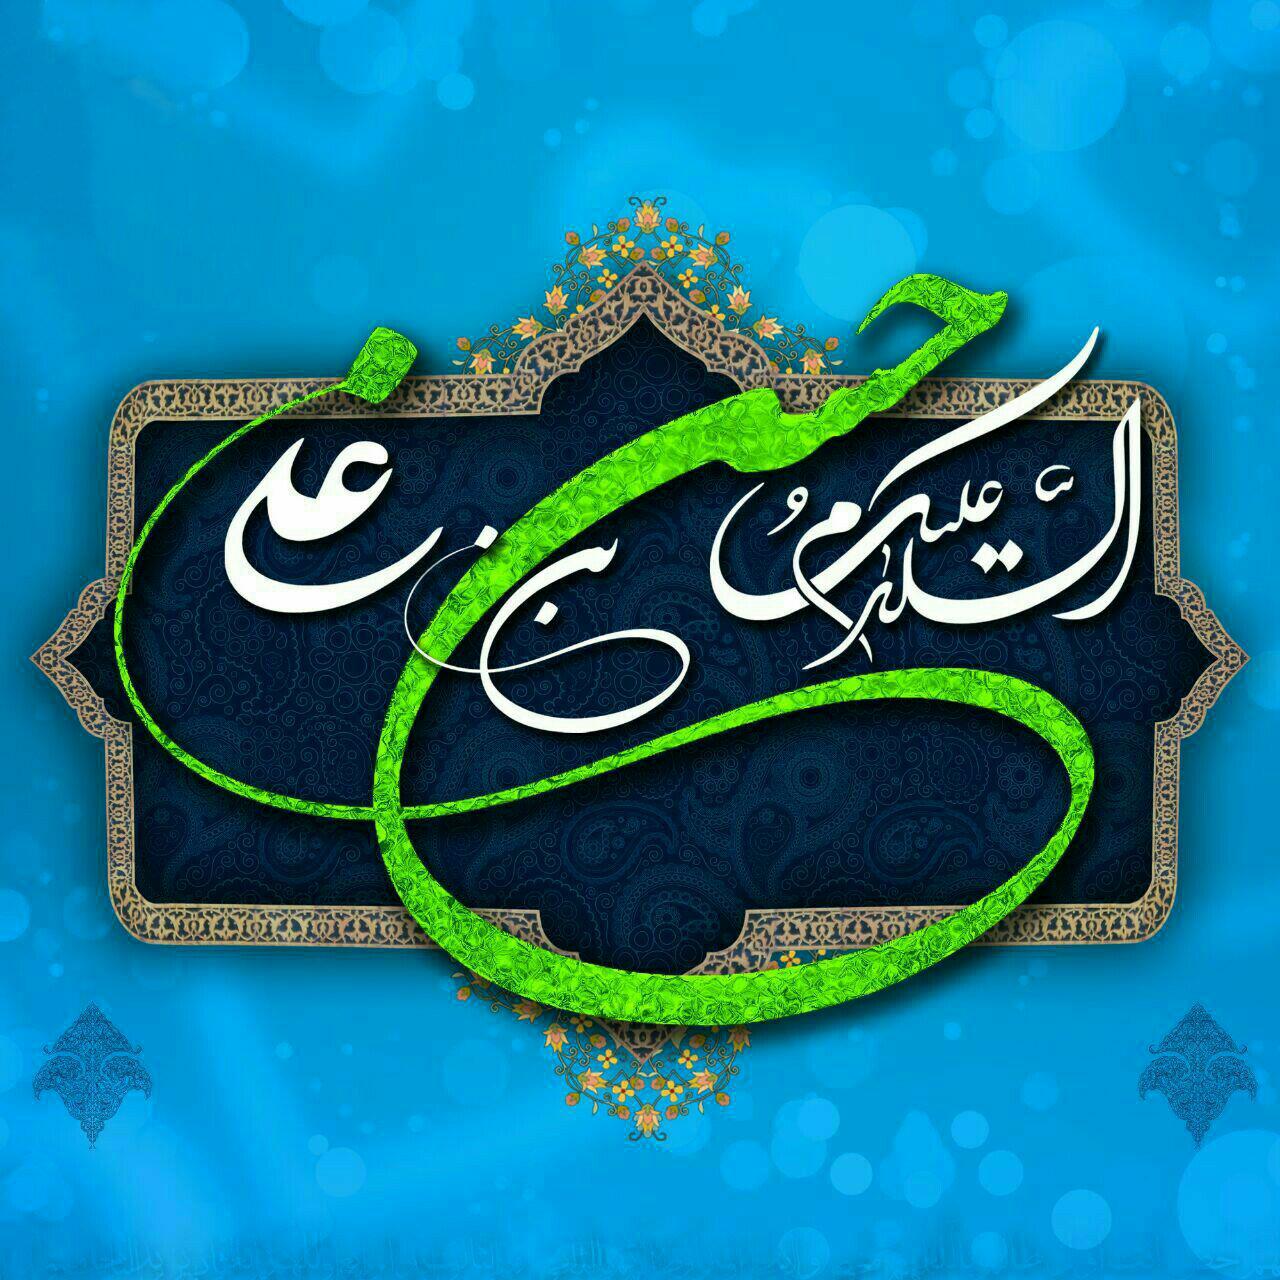 امام حسن مجتبی علیه السلام -(حک شده با دست زهرا هرکجای قلب من)